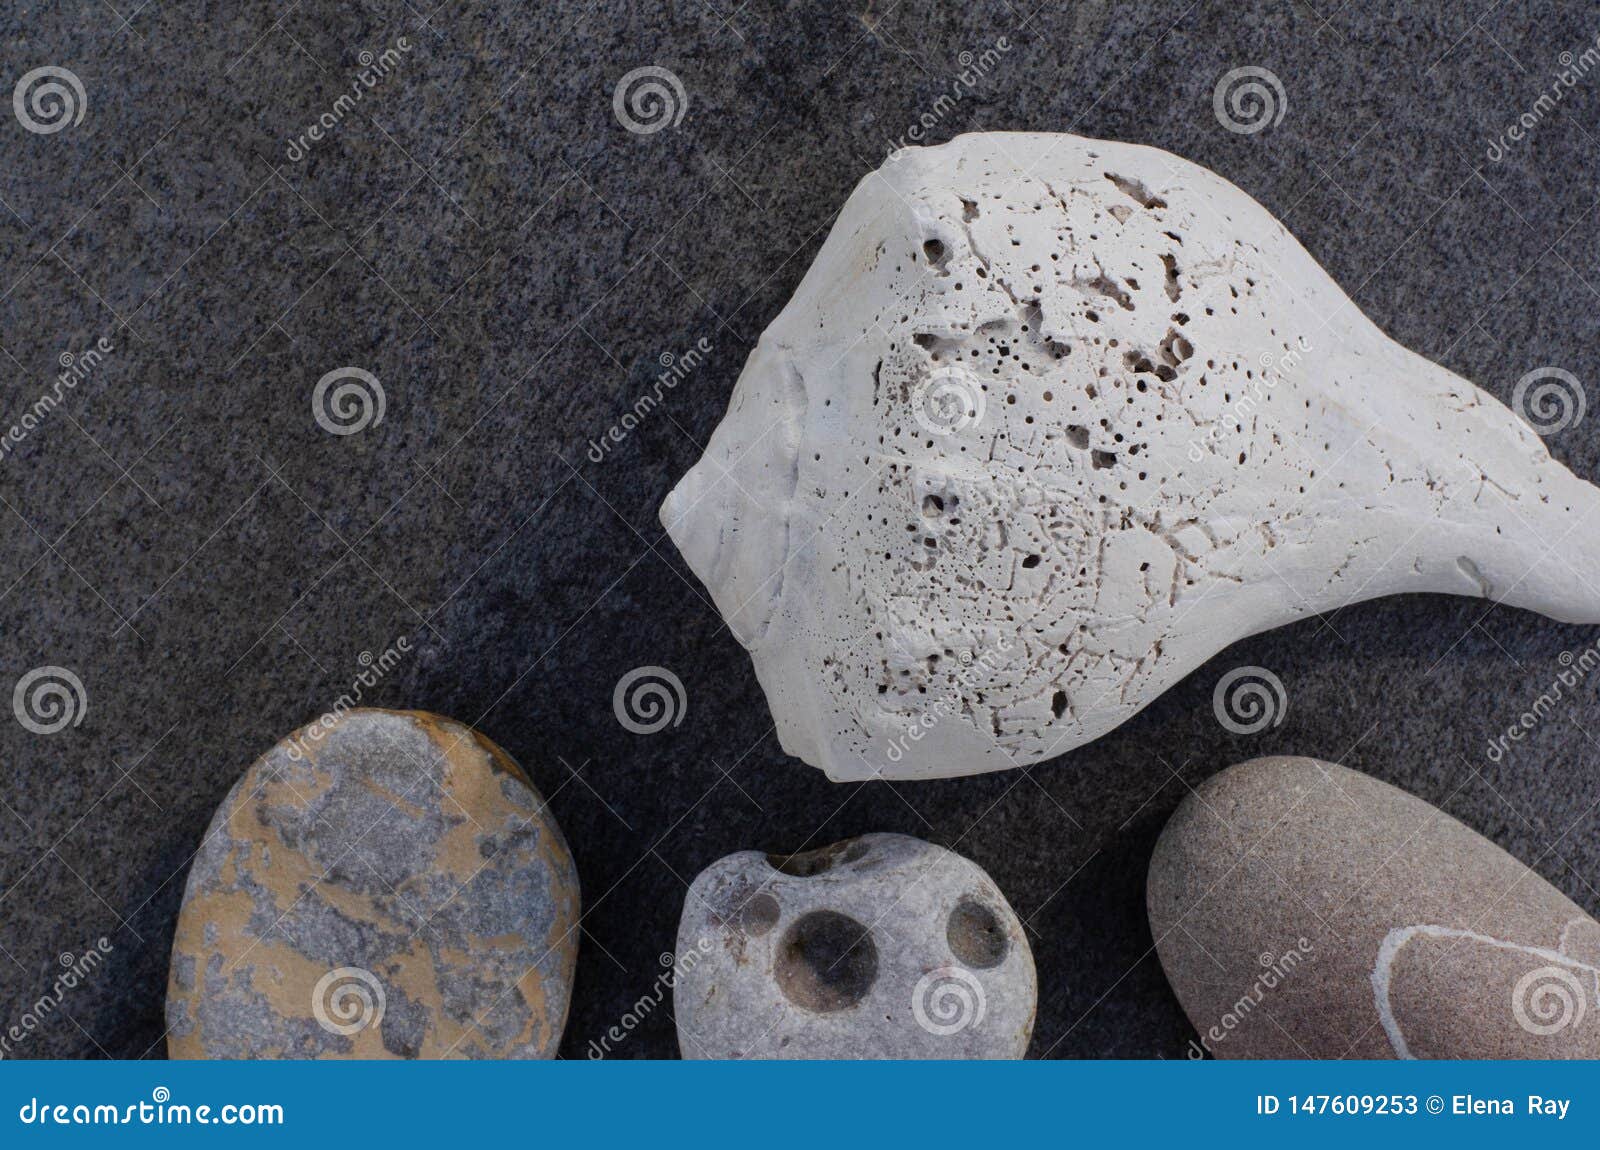 Muschel-und Strand-Steine auf Gray Rock. Einfache elementare Zusammensetzung mit einer sch?n strukturierten alten wei?en Muschel mit einzigartigen Strandsteinen